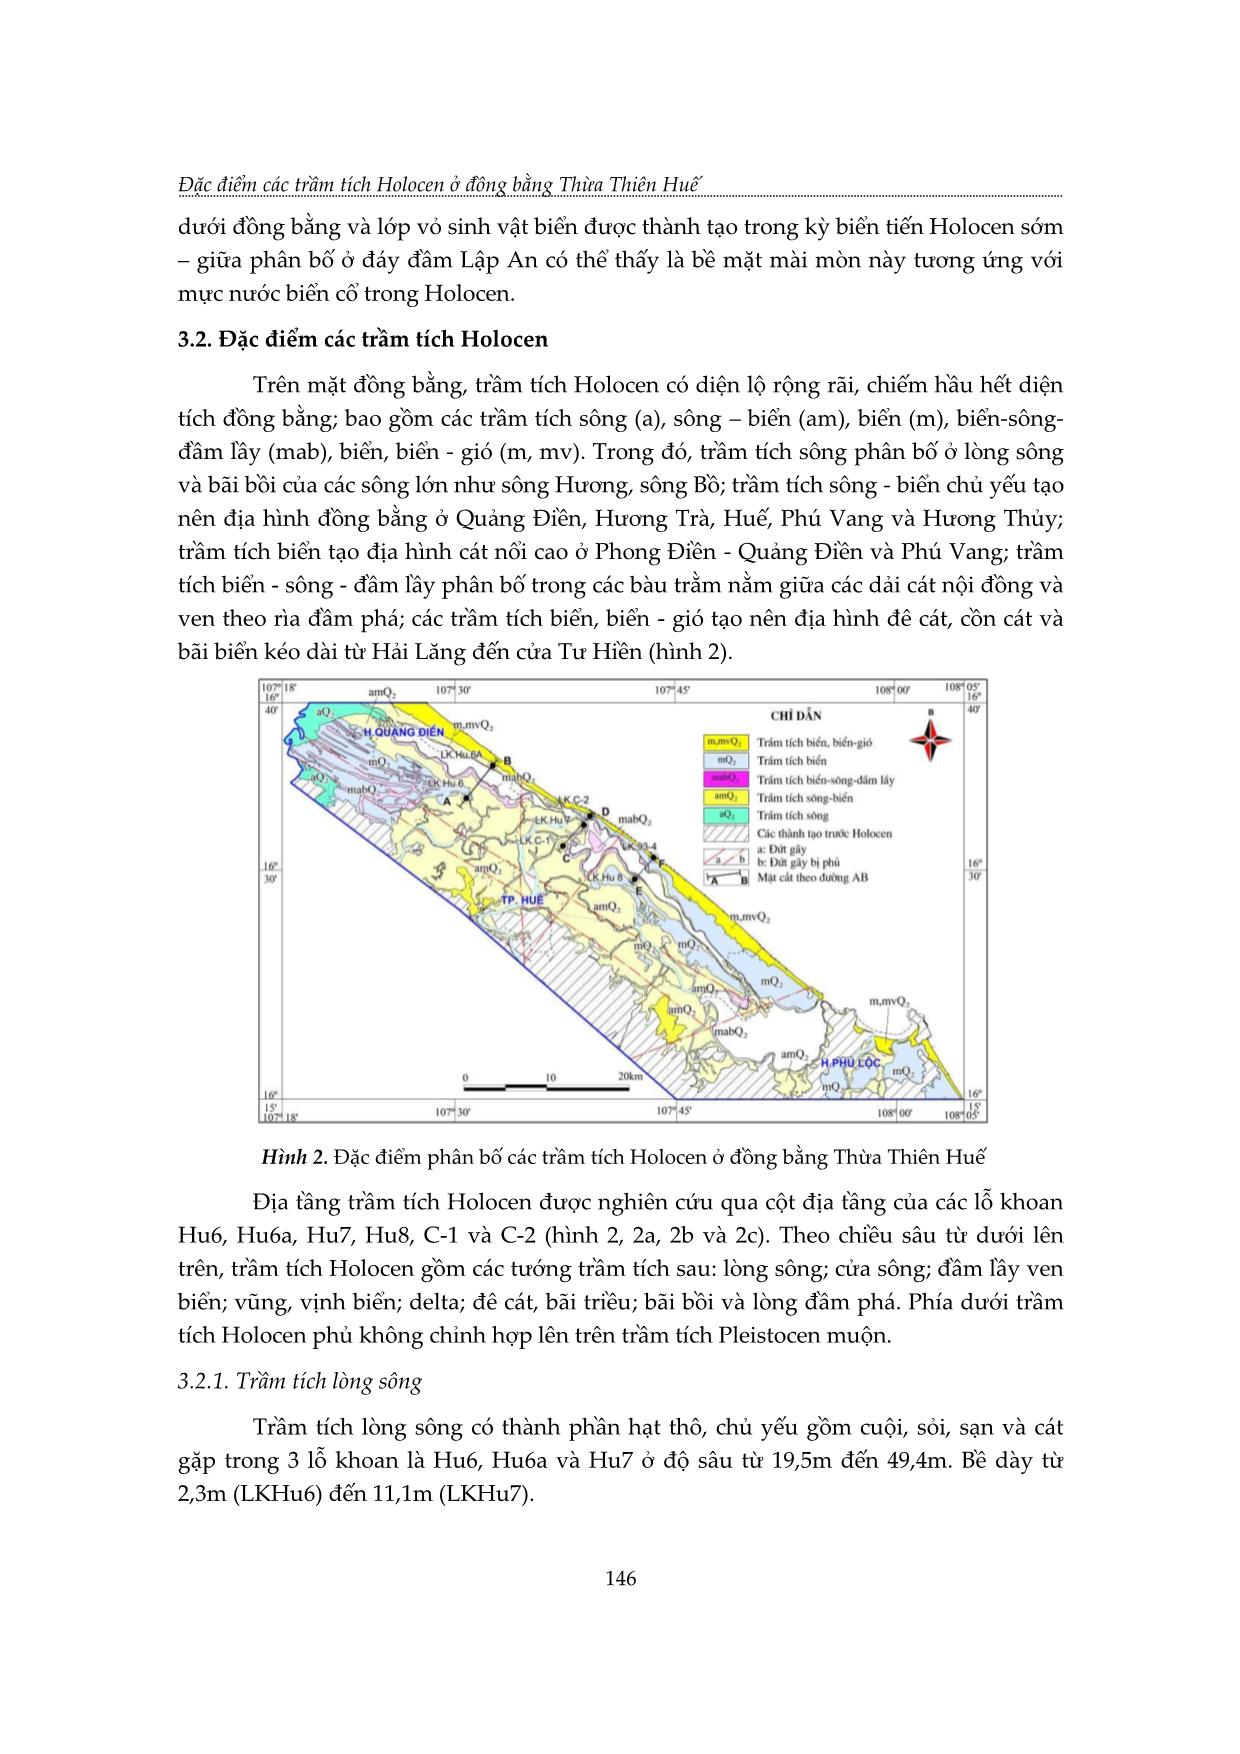 Đặc điểm các trầm tích Holocen ở đồng bằng Thừa Thiên Huế trang 6